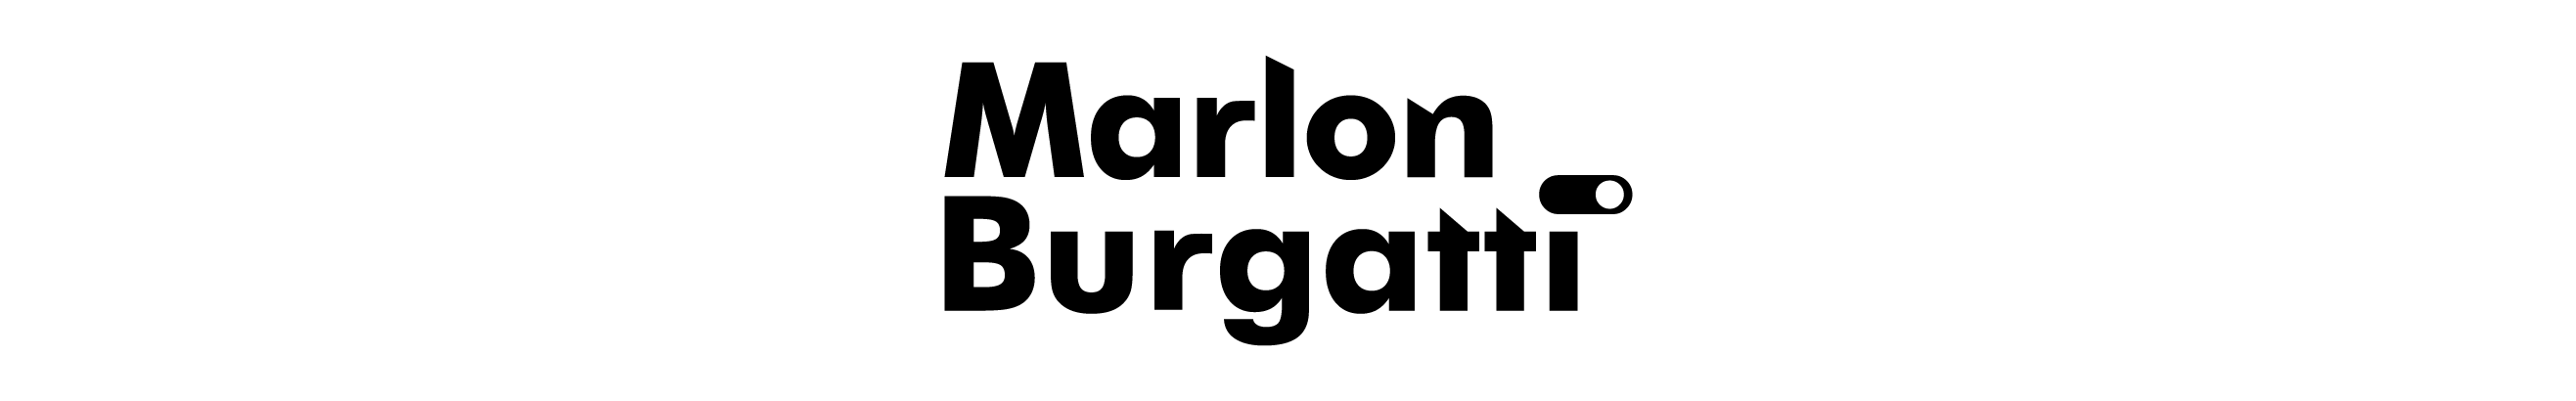 Marlon Burgatti's profile banner